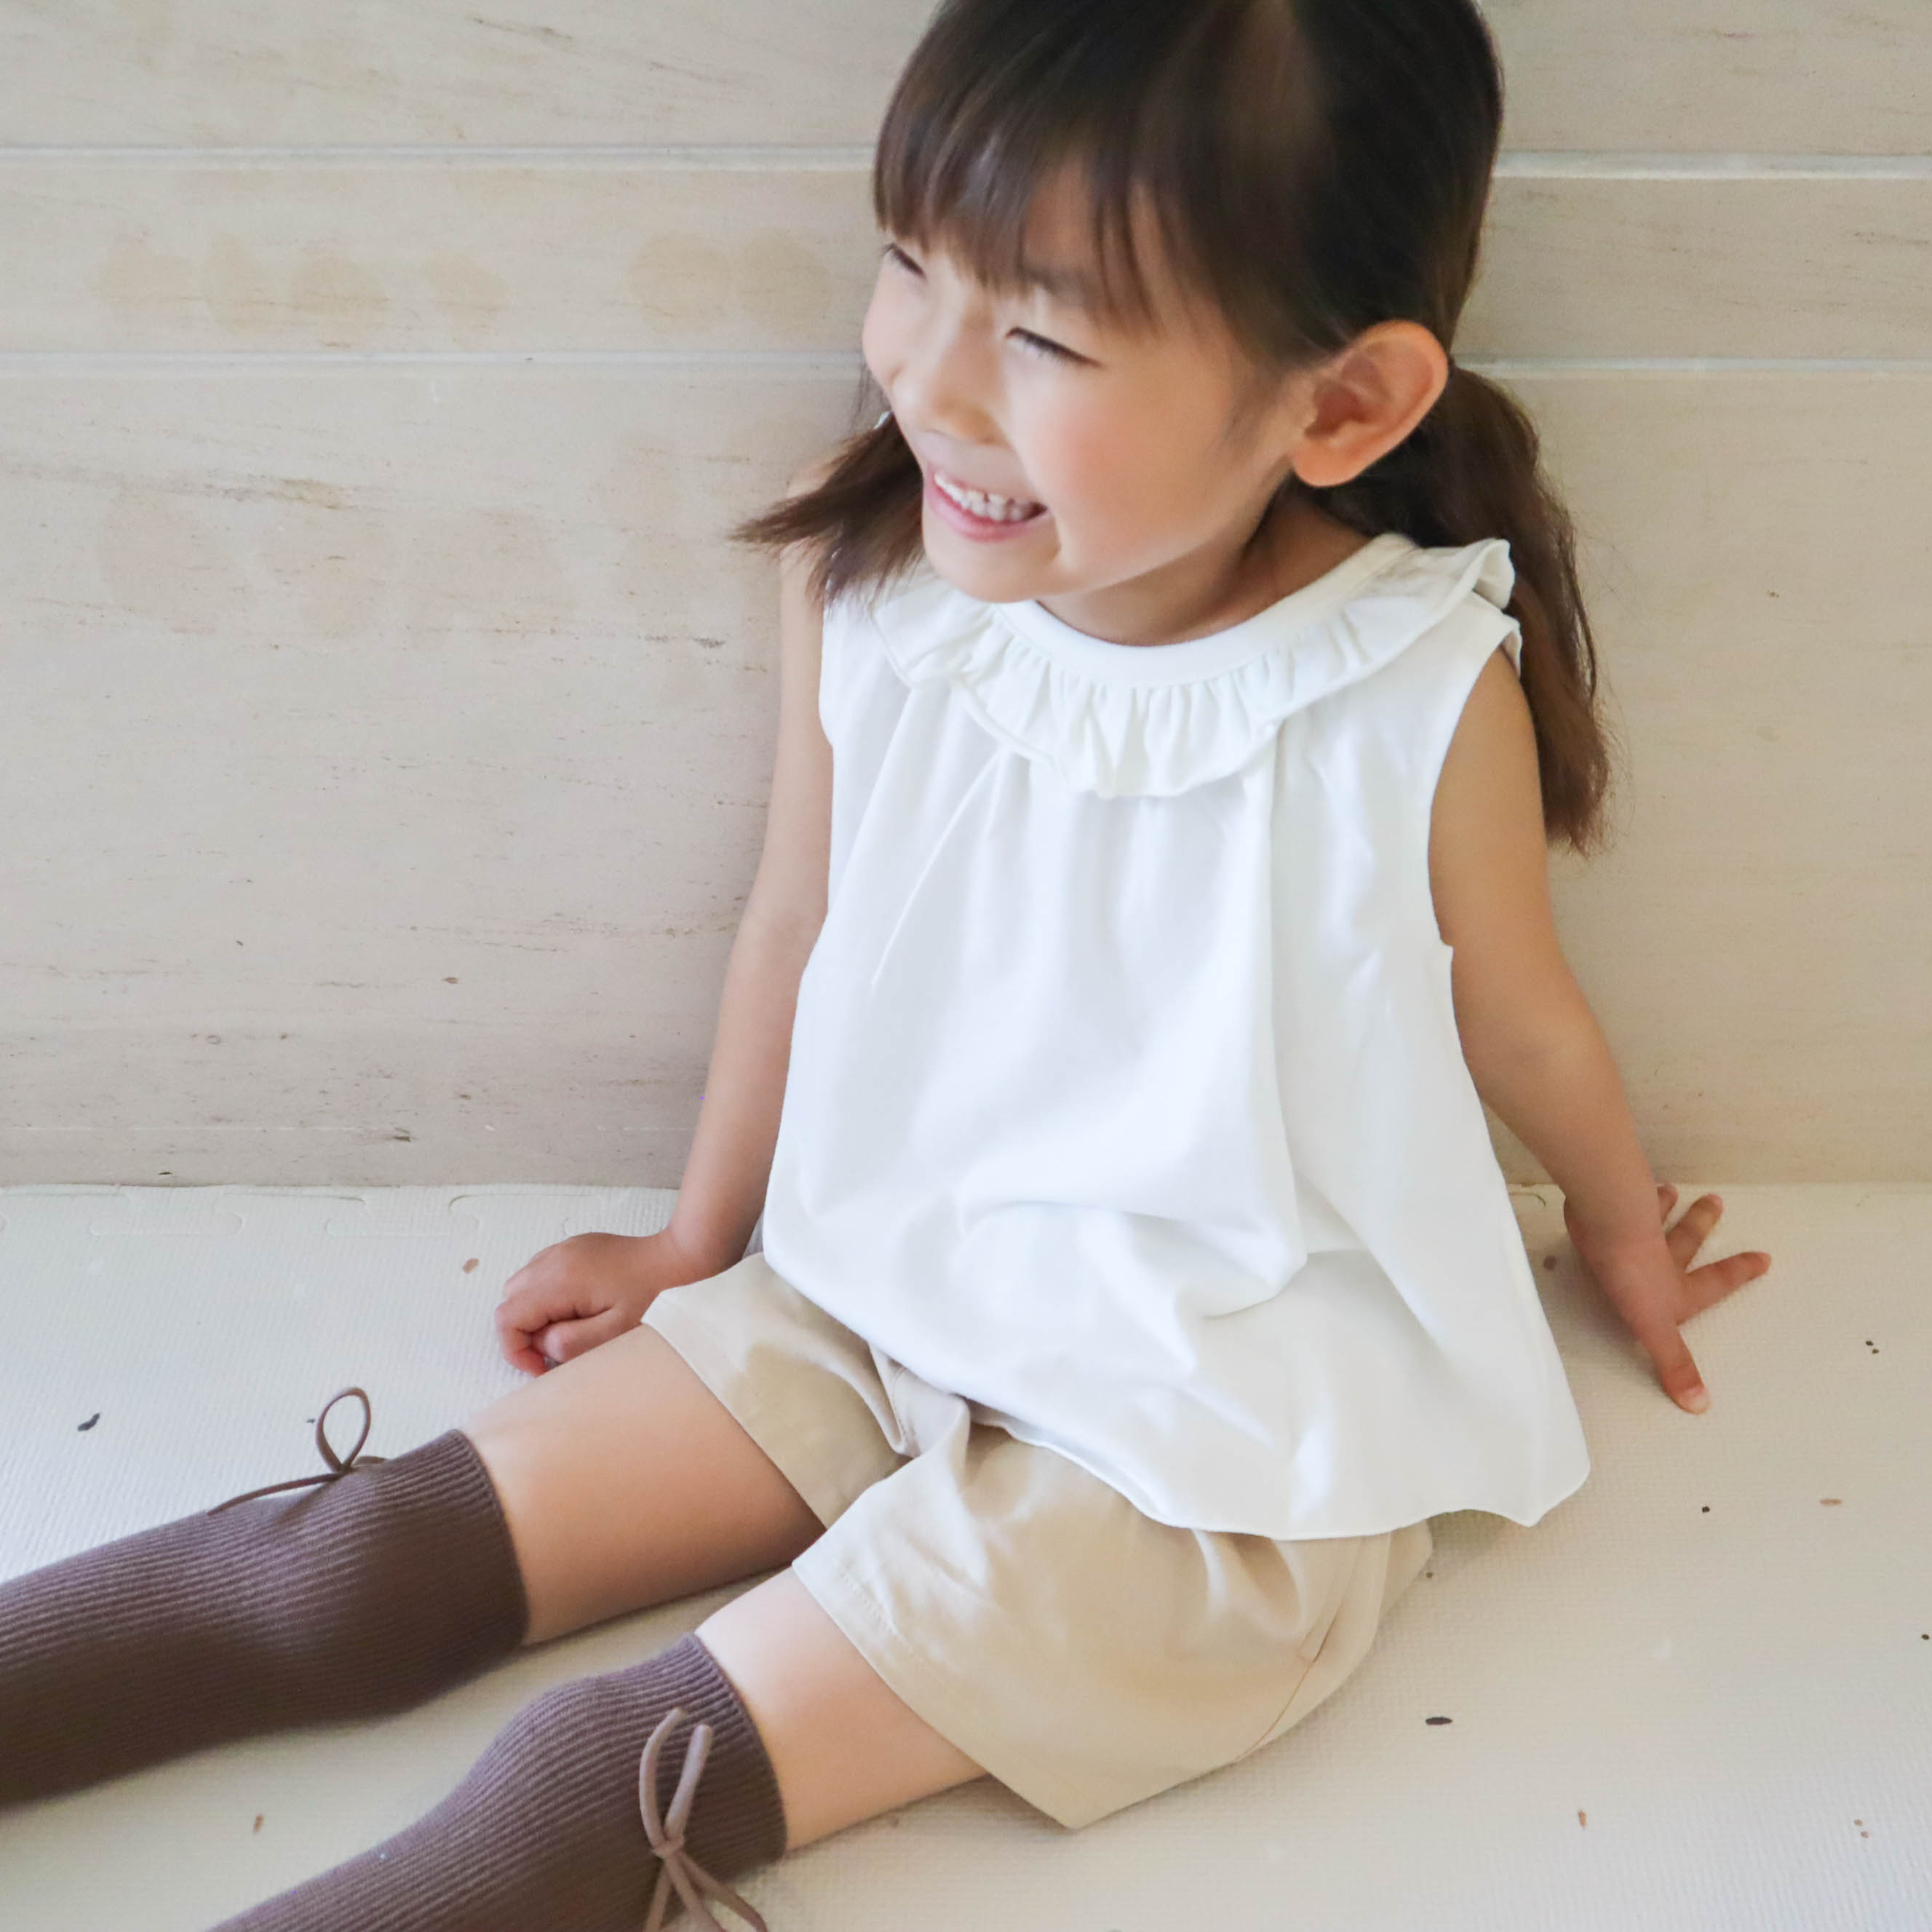 베이직 숏 팬츠 스타일리시 어린이 옷, 고급 아동복 사진